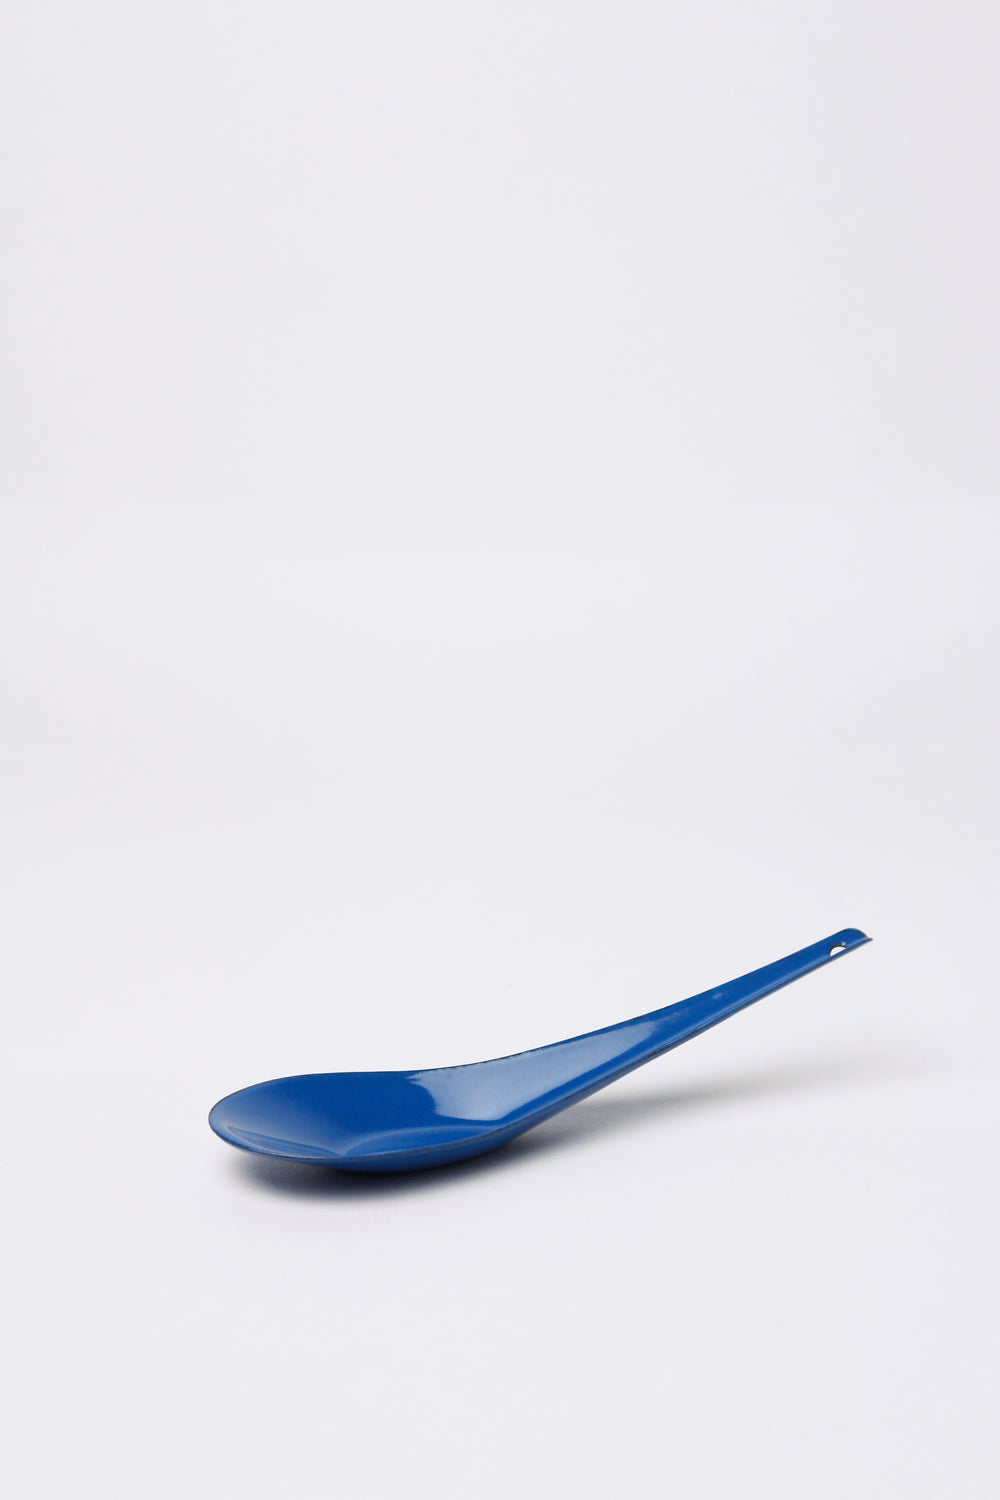 Enamel Soup Spoon, Blue